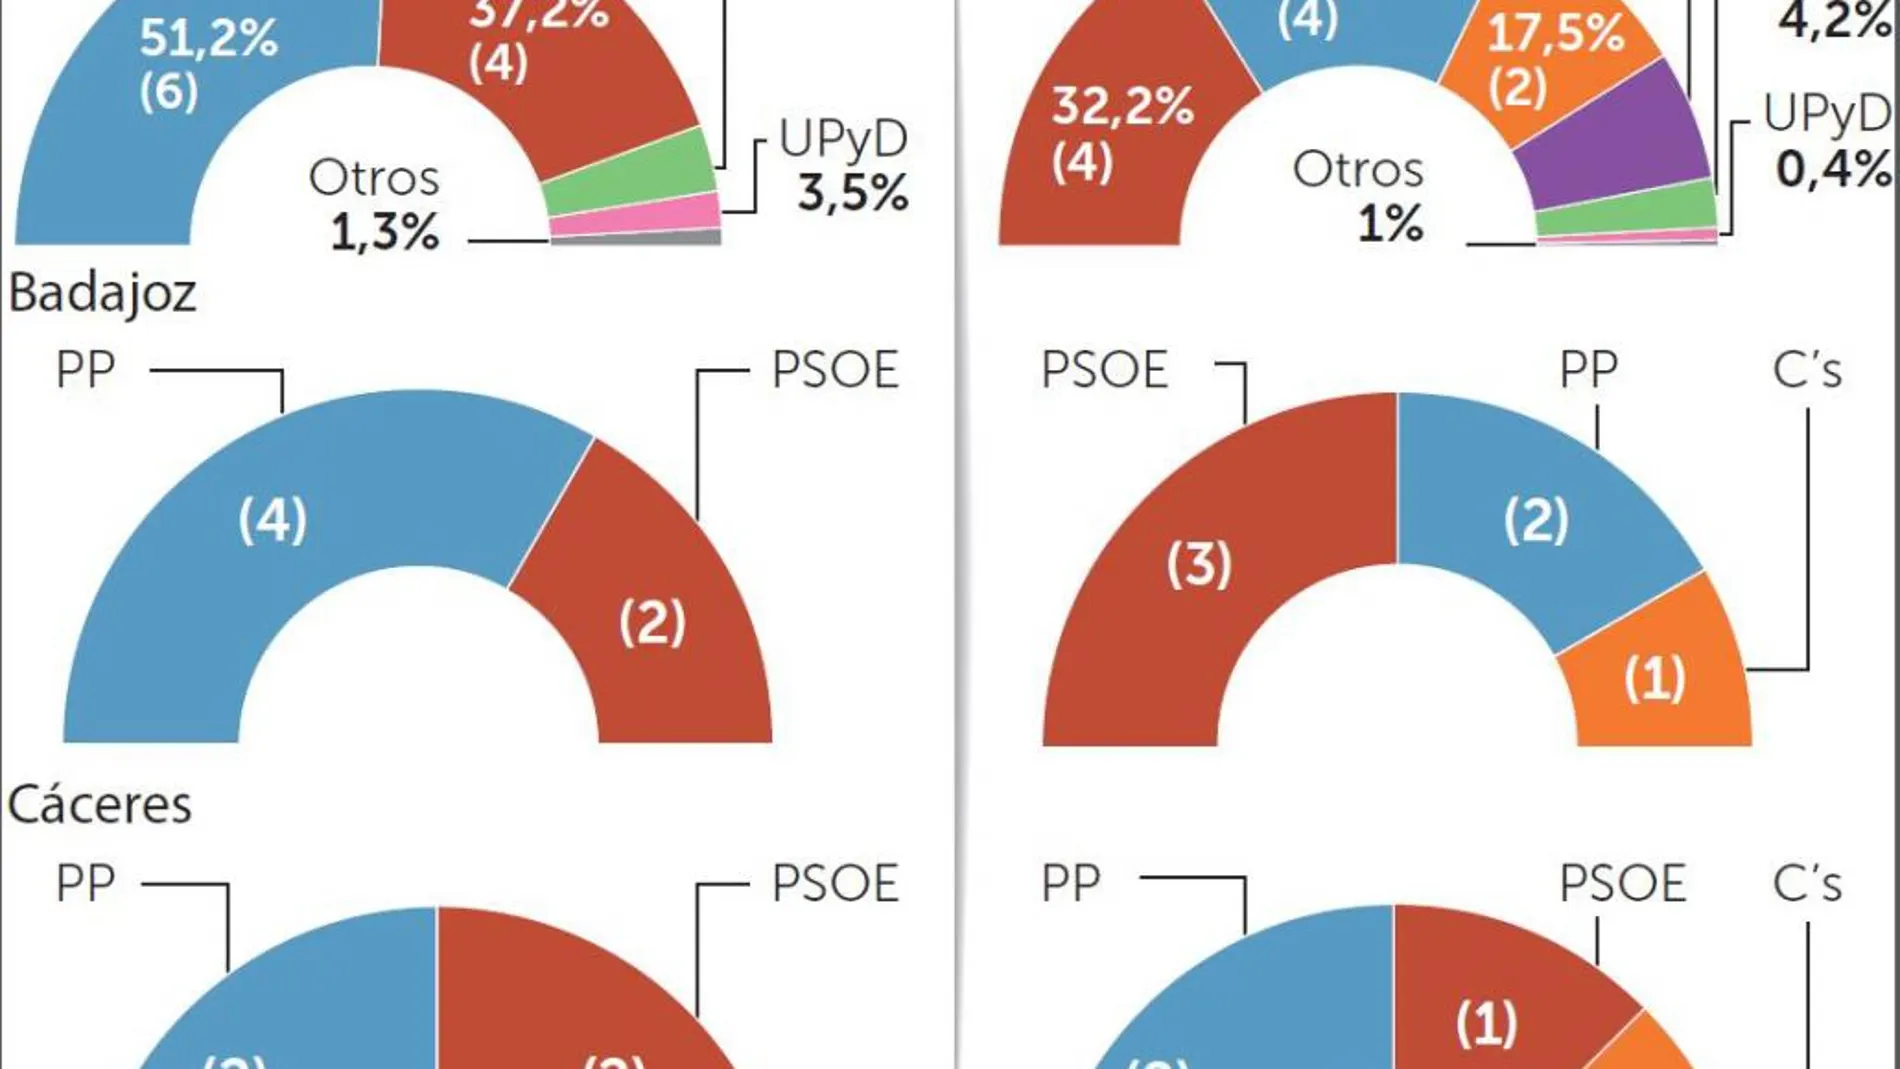 Extremadura: C’s, partido bisagra para PP y PSOE